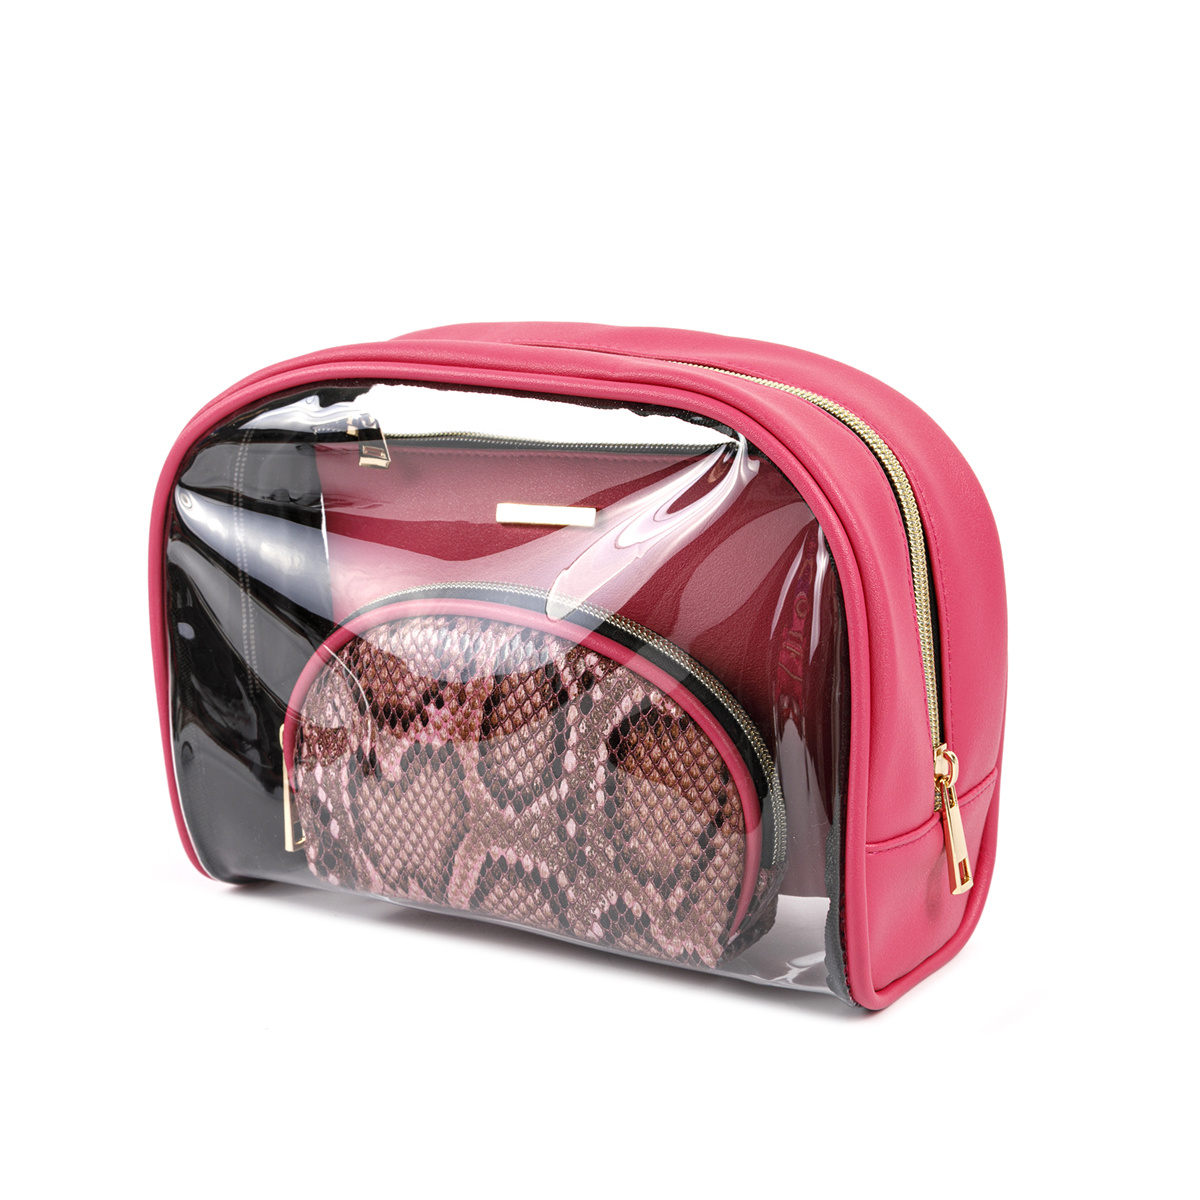 Geantă portabilă din poliester pentru cosmetice și geantă de toaletă de călătorie: set cadou pentru femei și fete